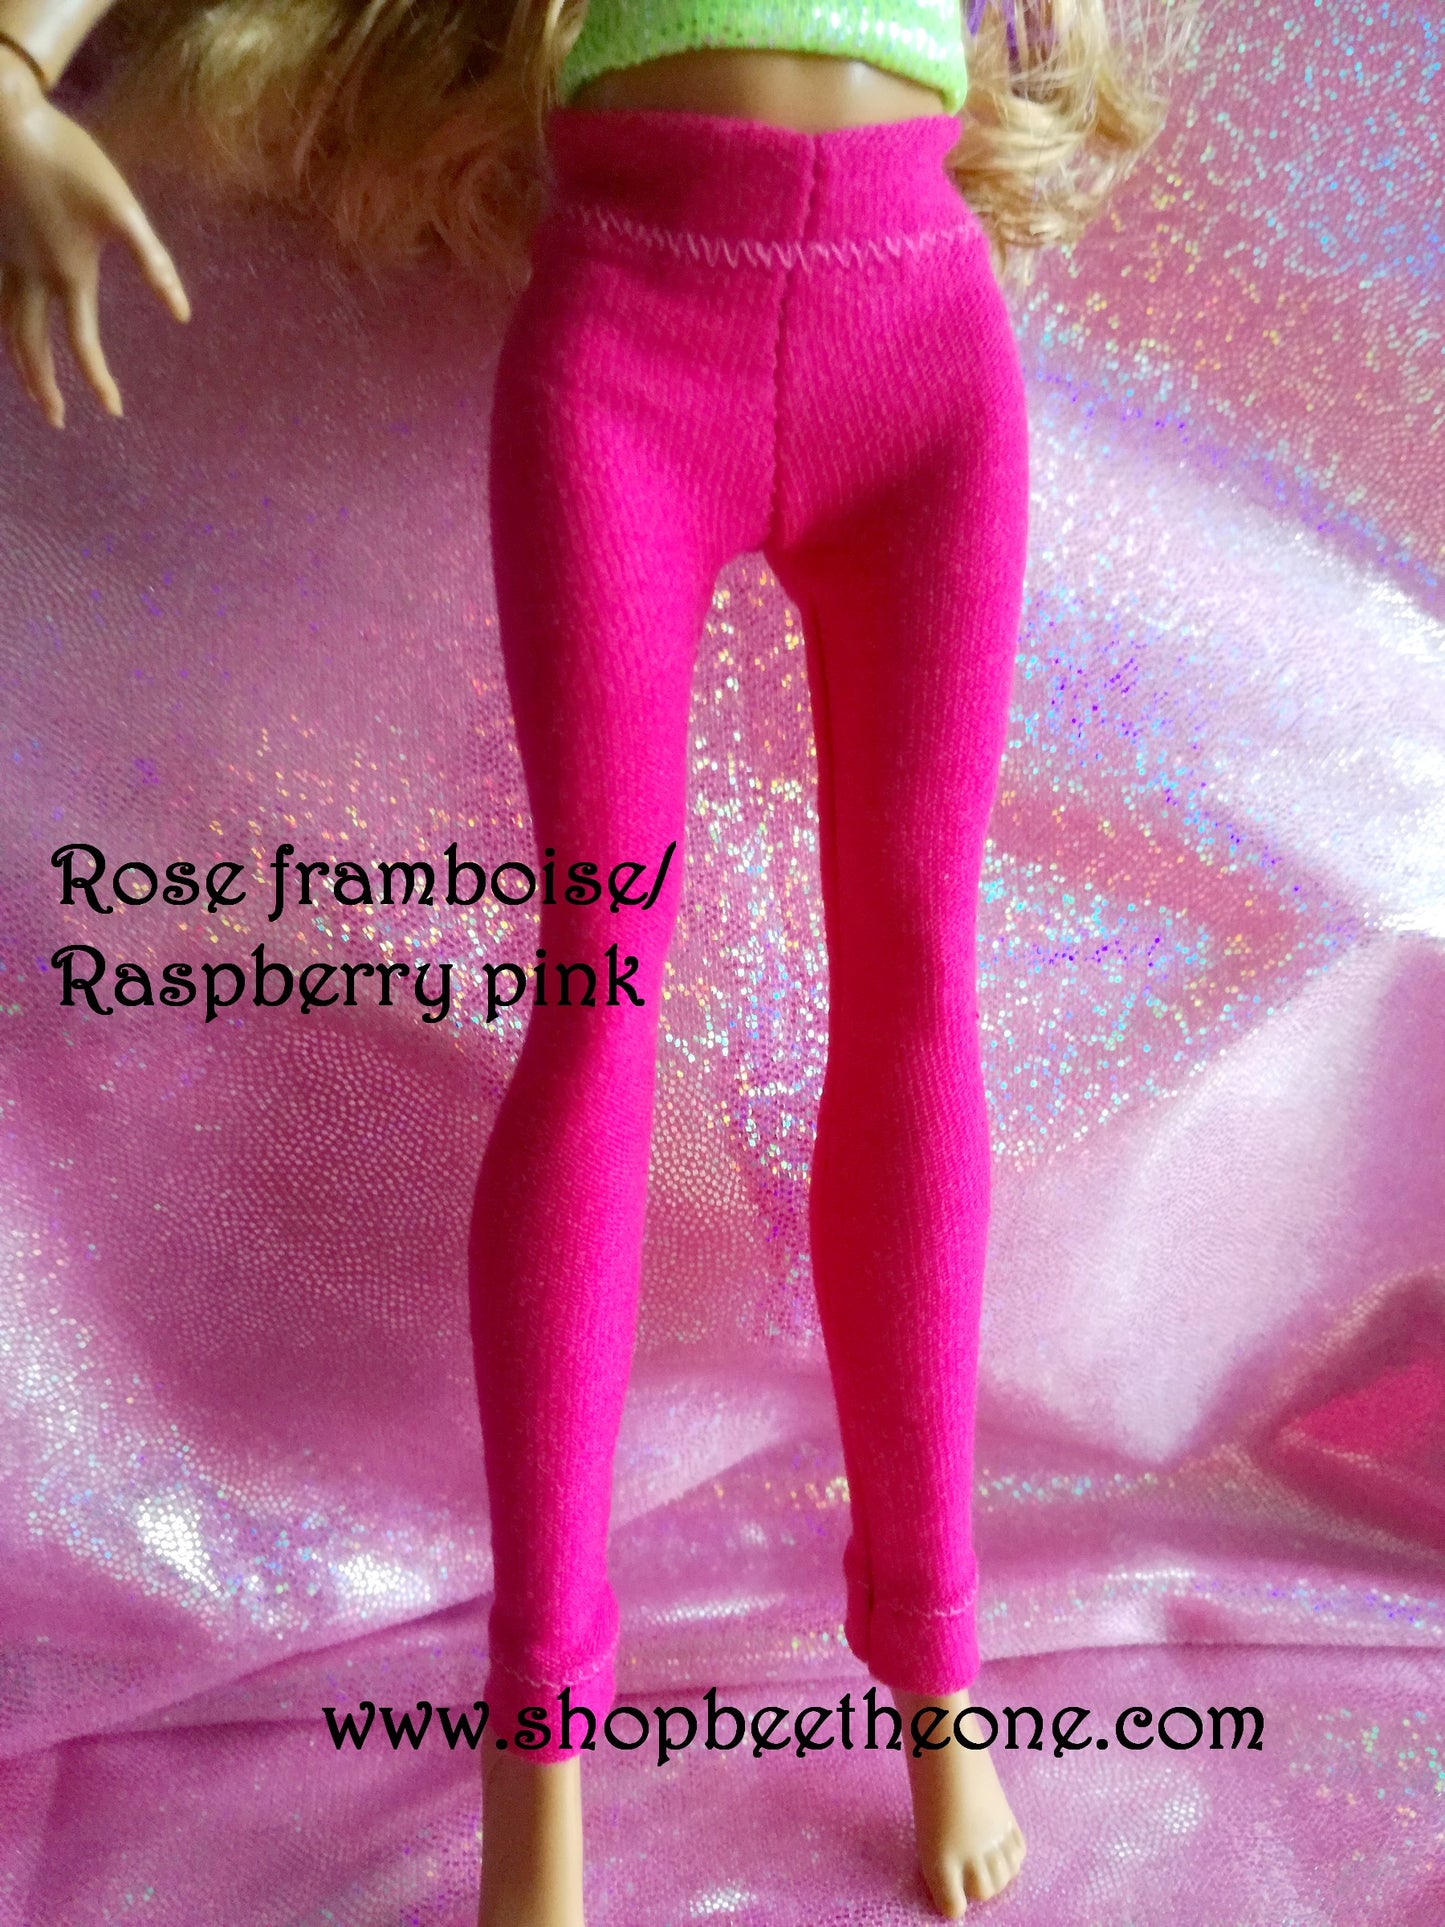 Pantalon collant leggings pour poupées Monster High/Ever After High/Hairmazing - 2 tailles - 8 coloris - Collection Basics - par Bee the One